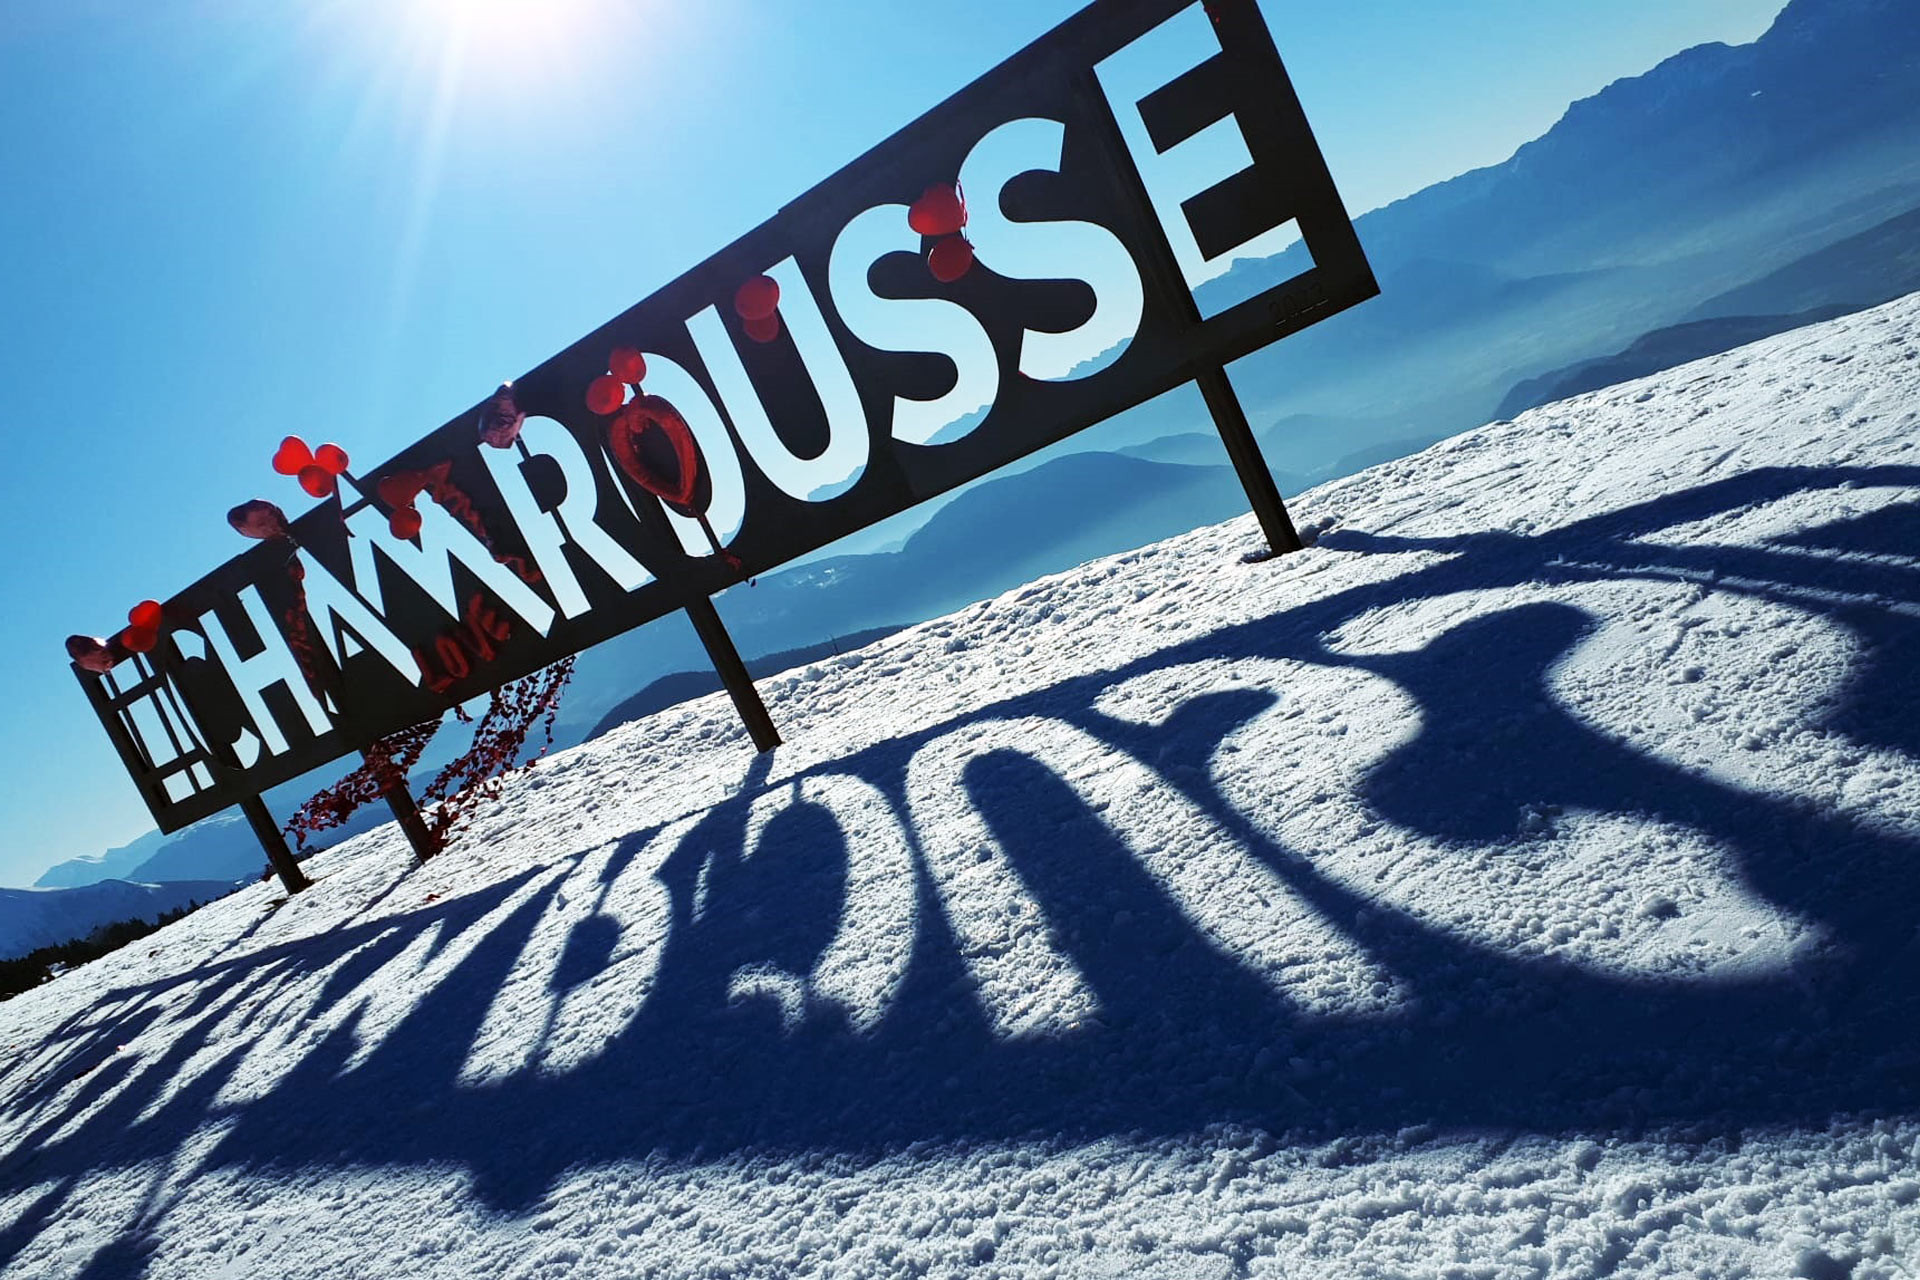 Chamrousse panneau photo arrivée télésiège casserousse hiver station ski montagne grenoble isère alpes france